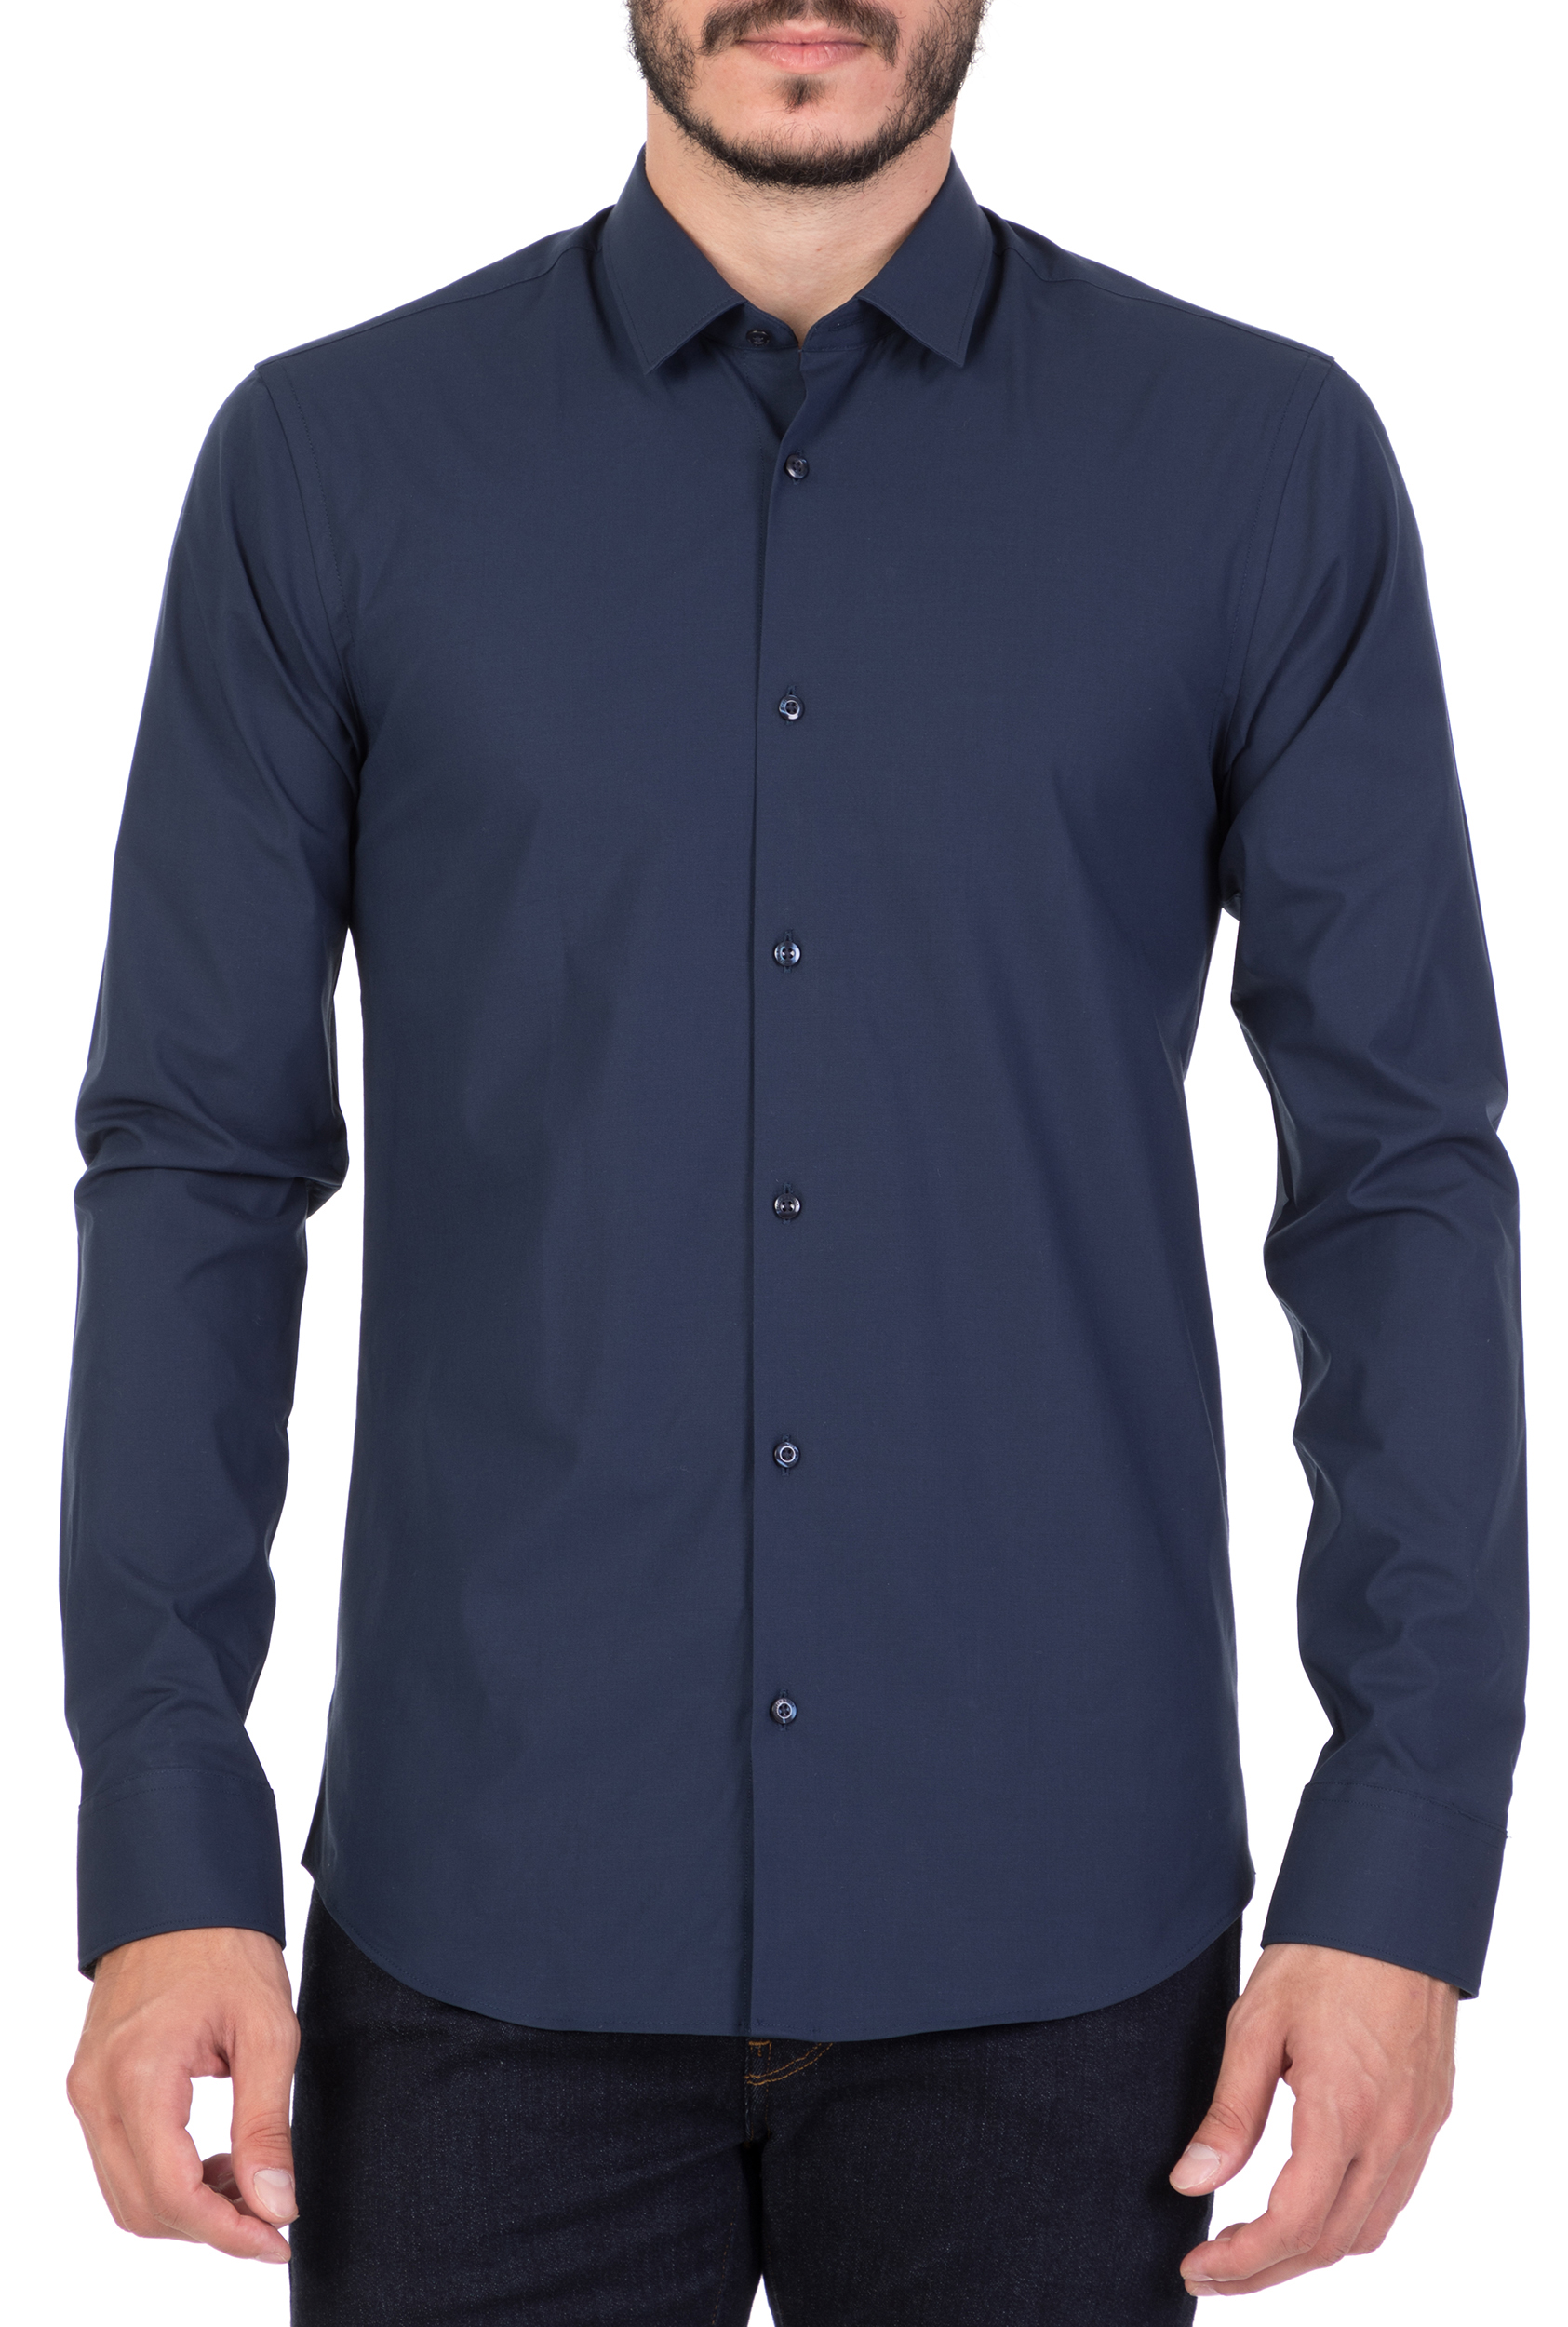 Ανδρικά/Ρούχα/Πουκάμισα/Μακρυμάνικα SCOTCH & SODA - Ανδρικό μακρυμάνικο πουκάμισο SCOTCH & SODA μπλε